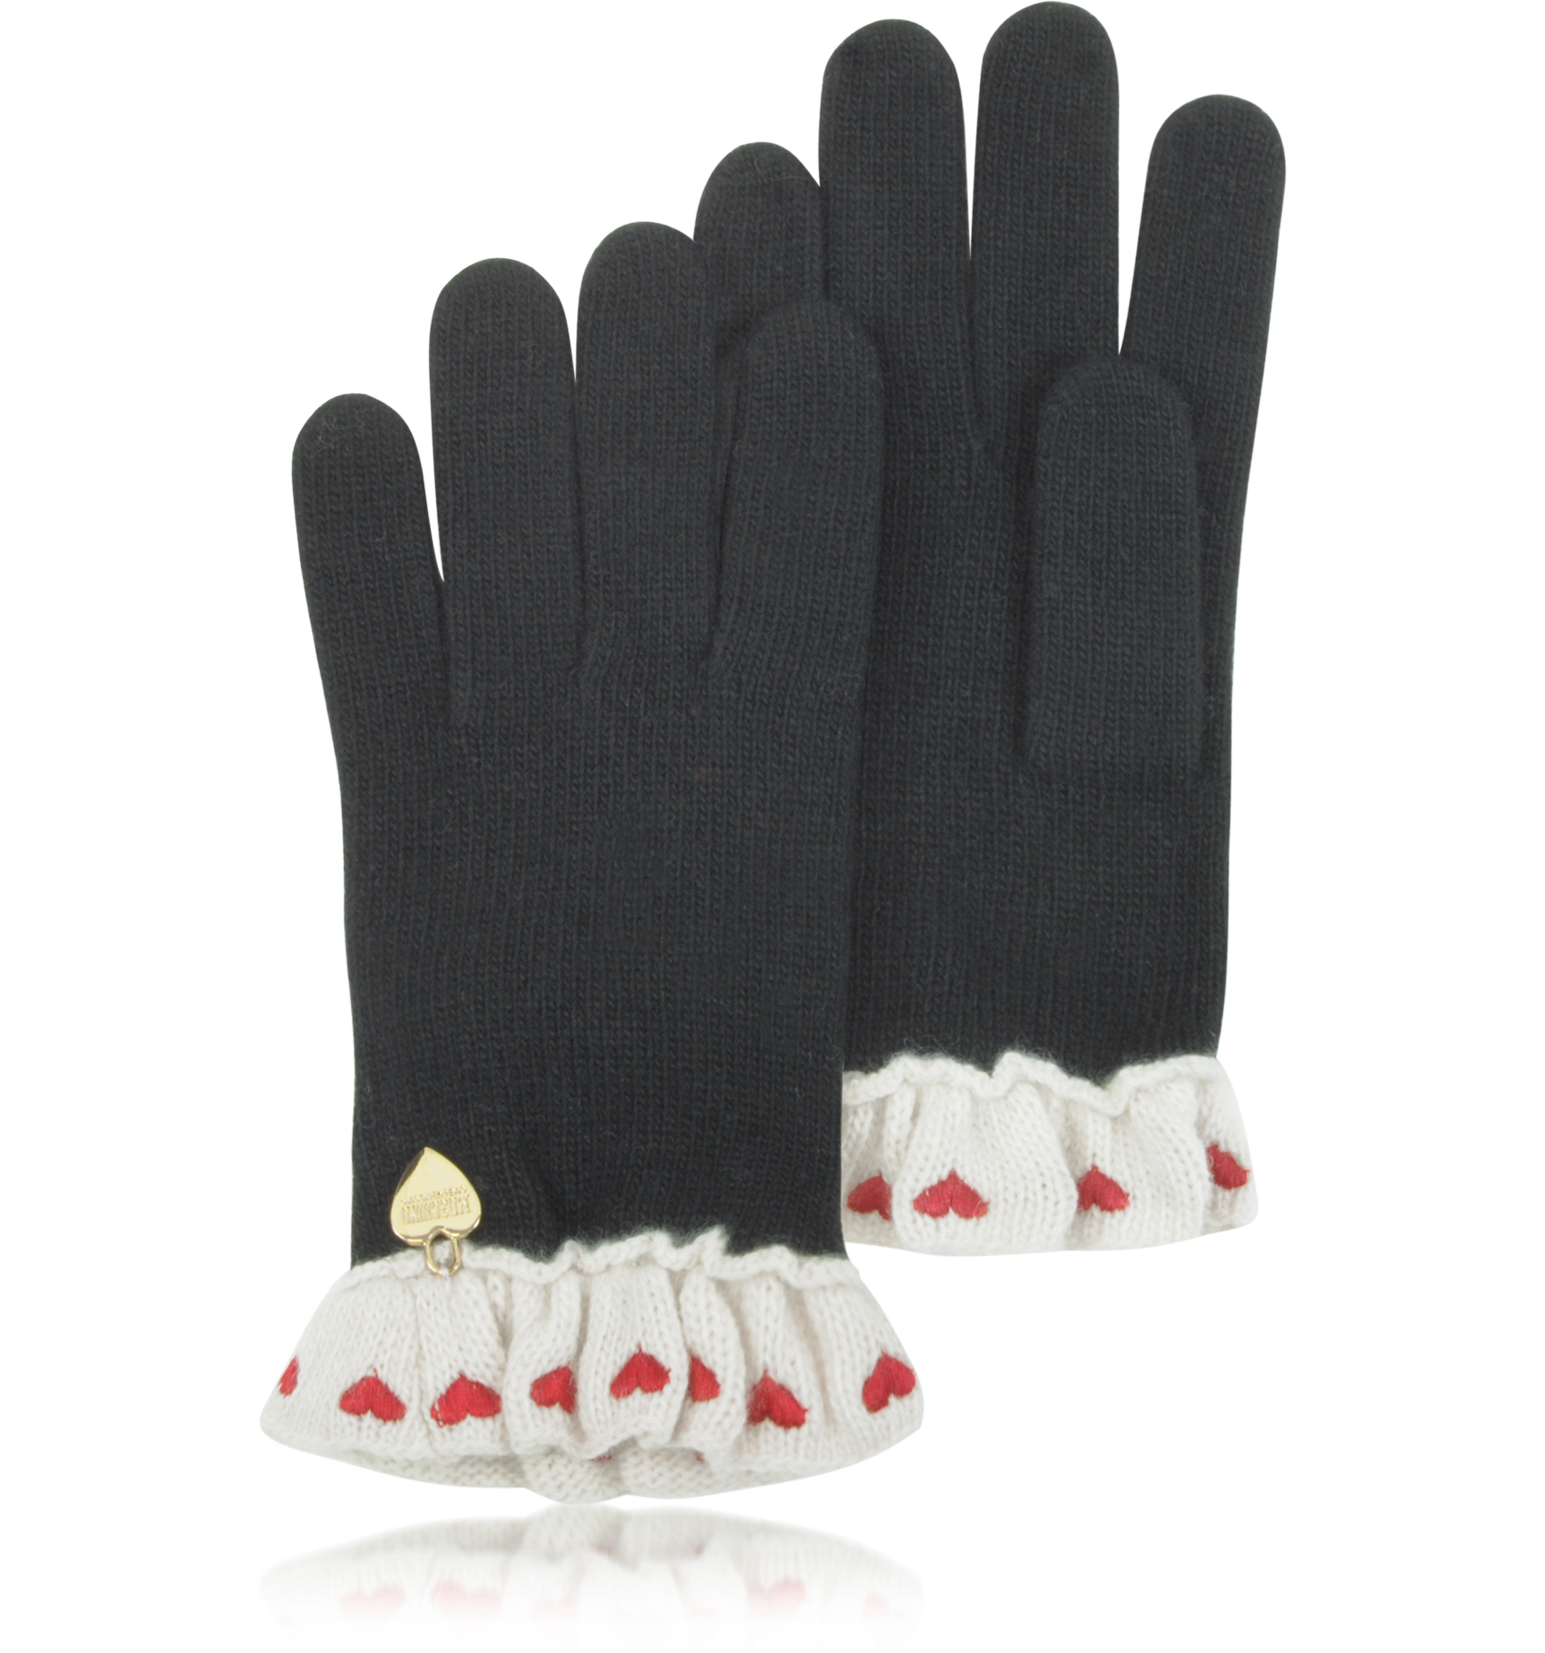 soft wool gloves